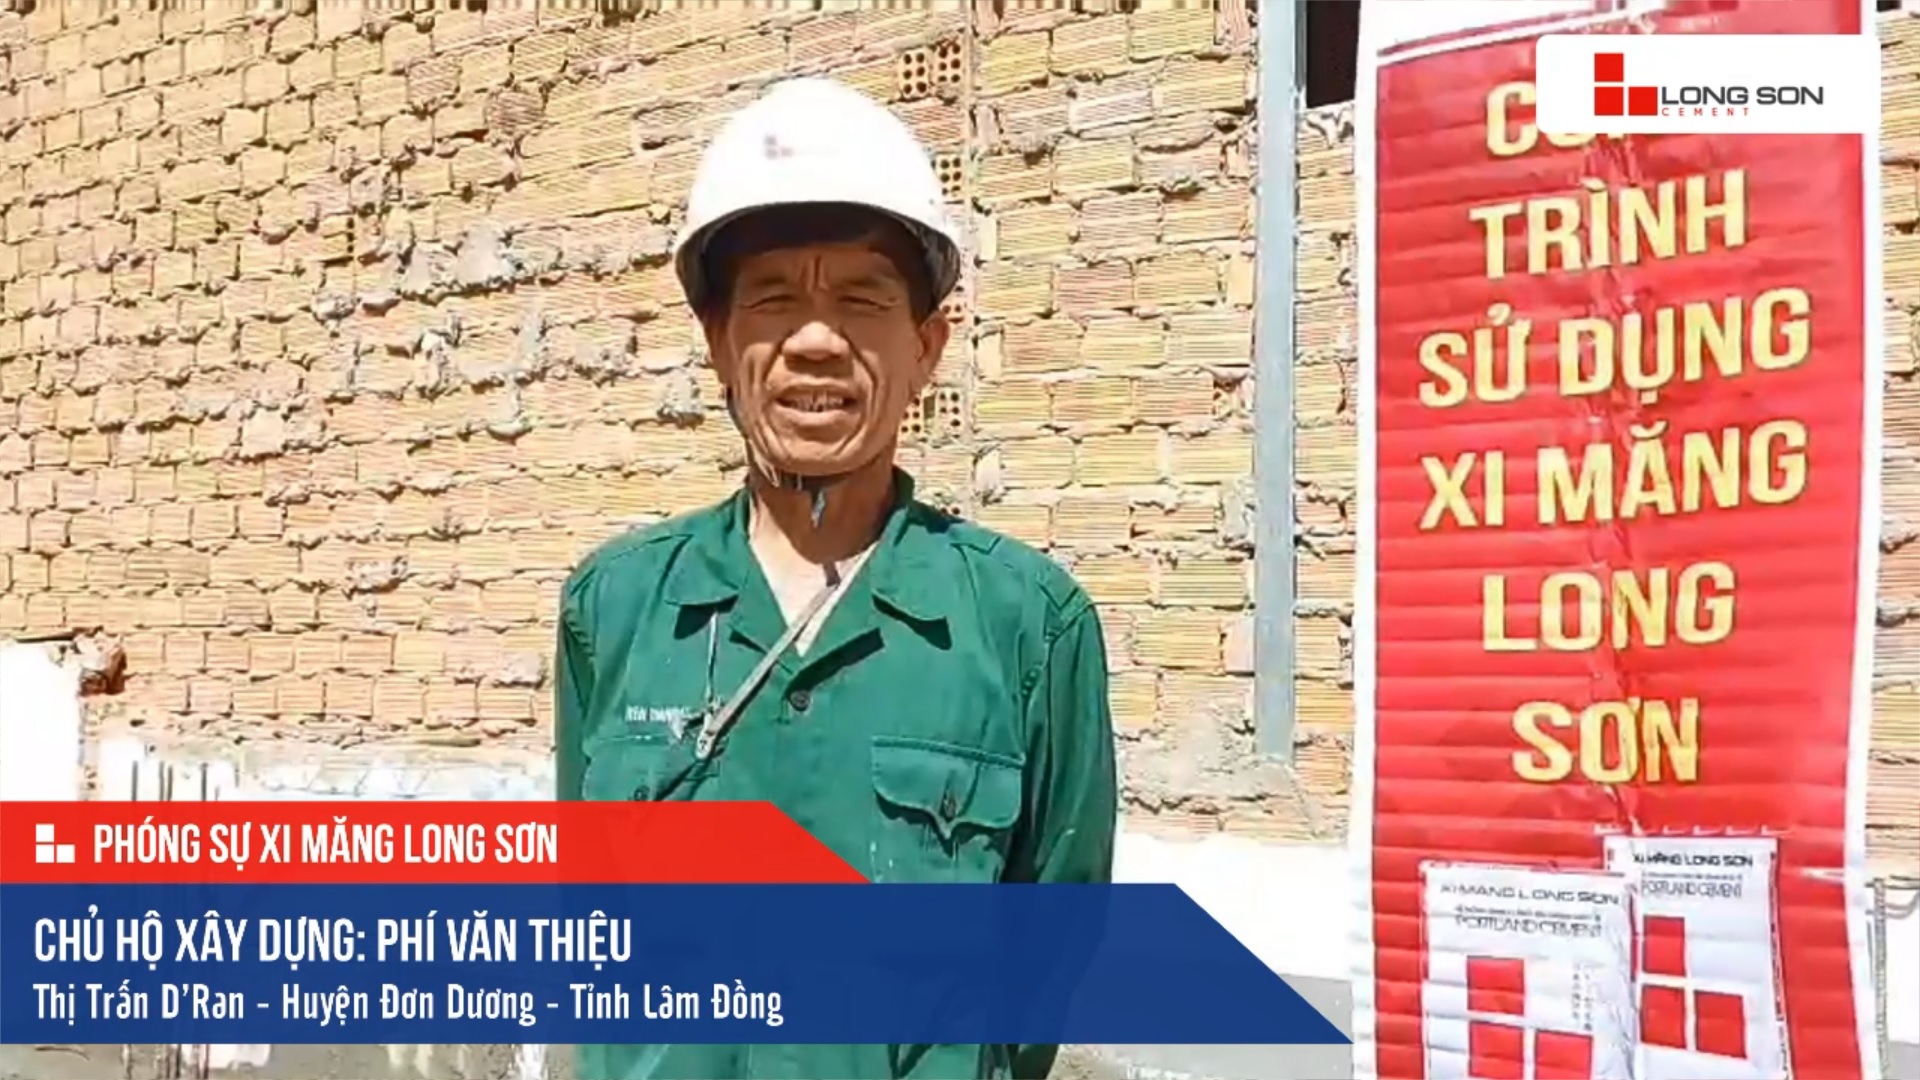 Phóng sự công trình sử dụng Xi măng Long Sơn tại Lâm Đồng 15.07.2020